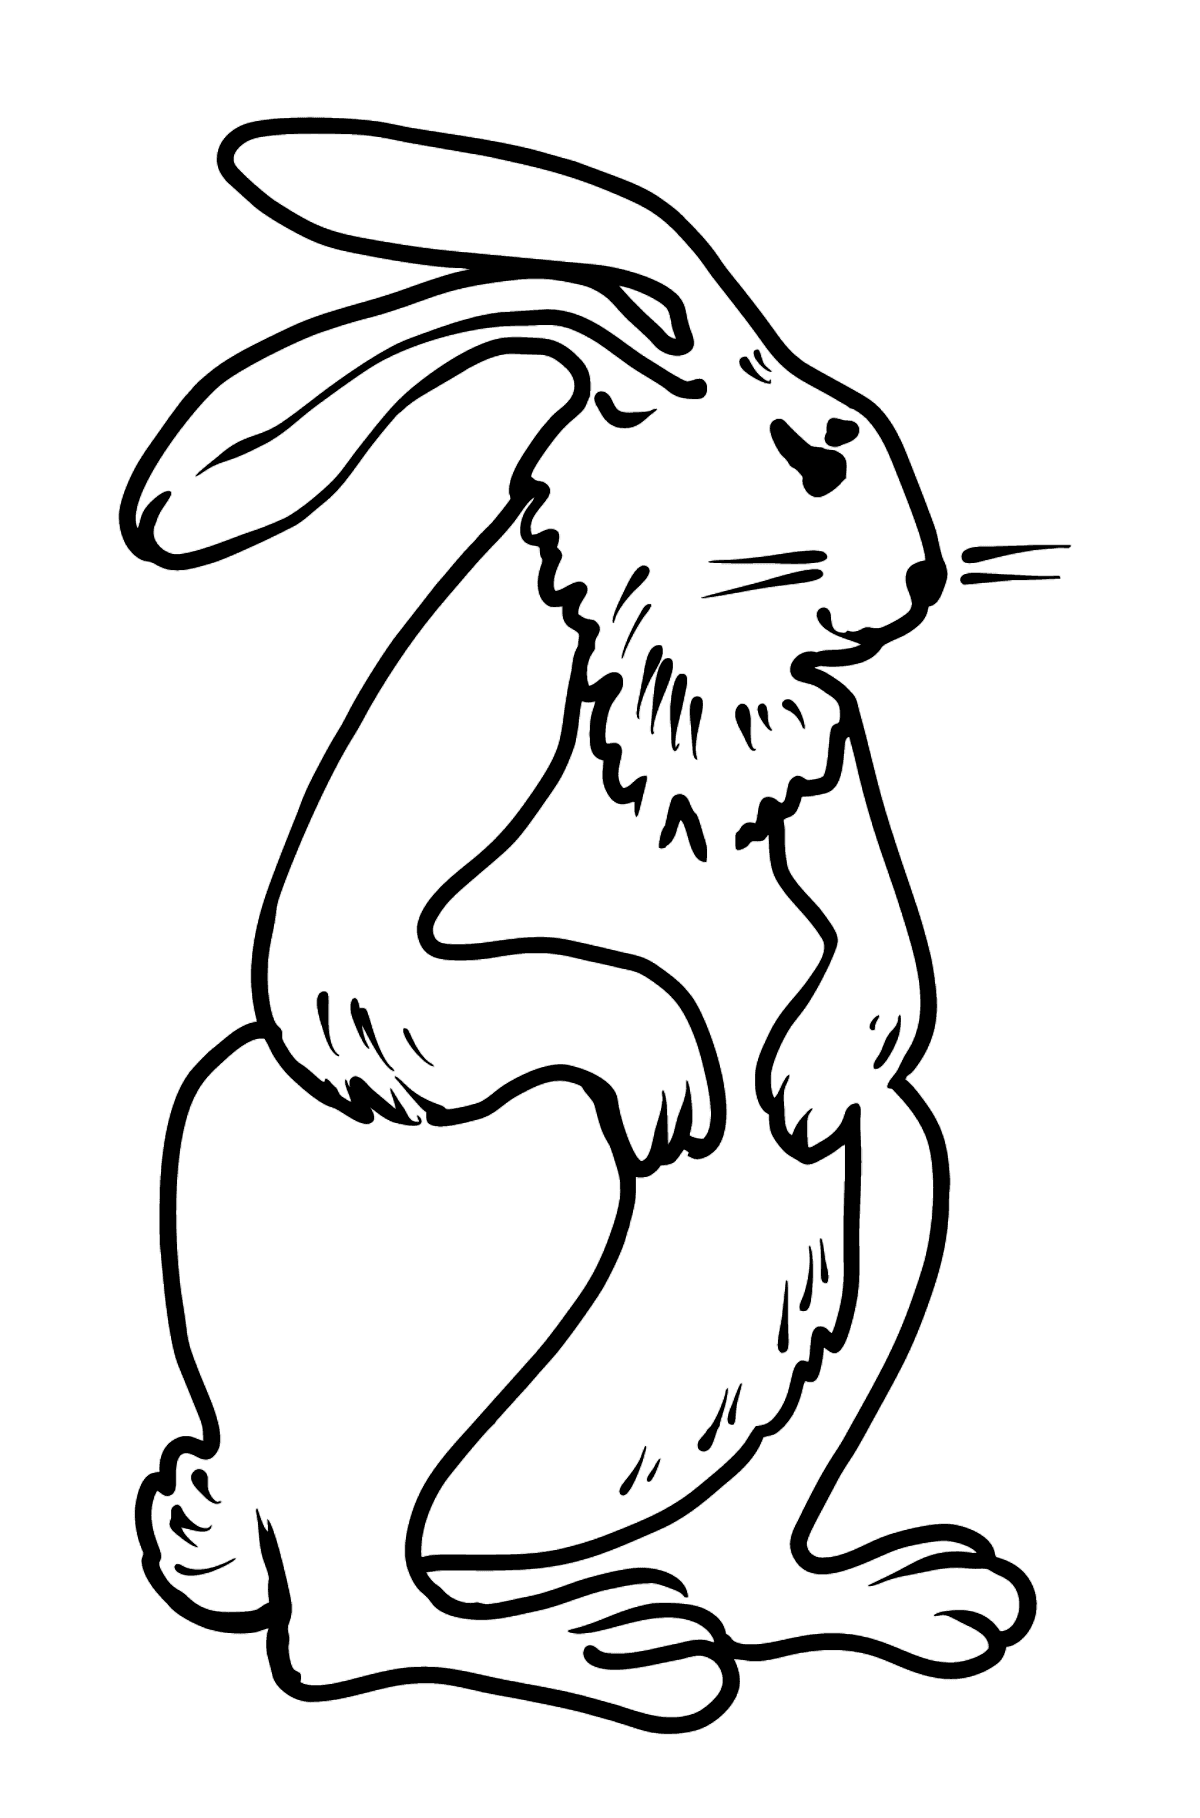 Dibujo de conejo para colorear - Dibujos para Colorear para Niños